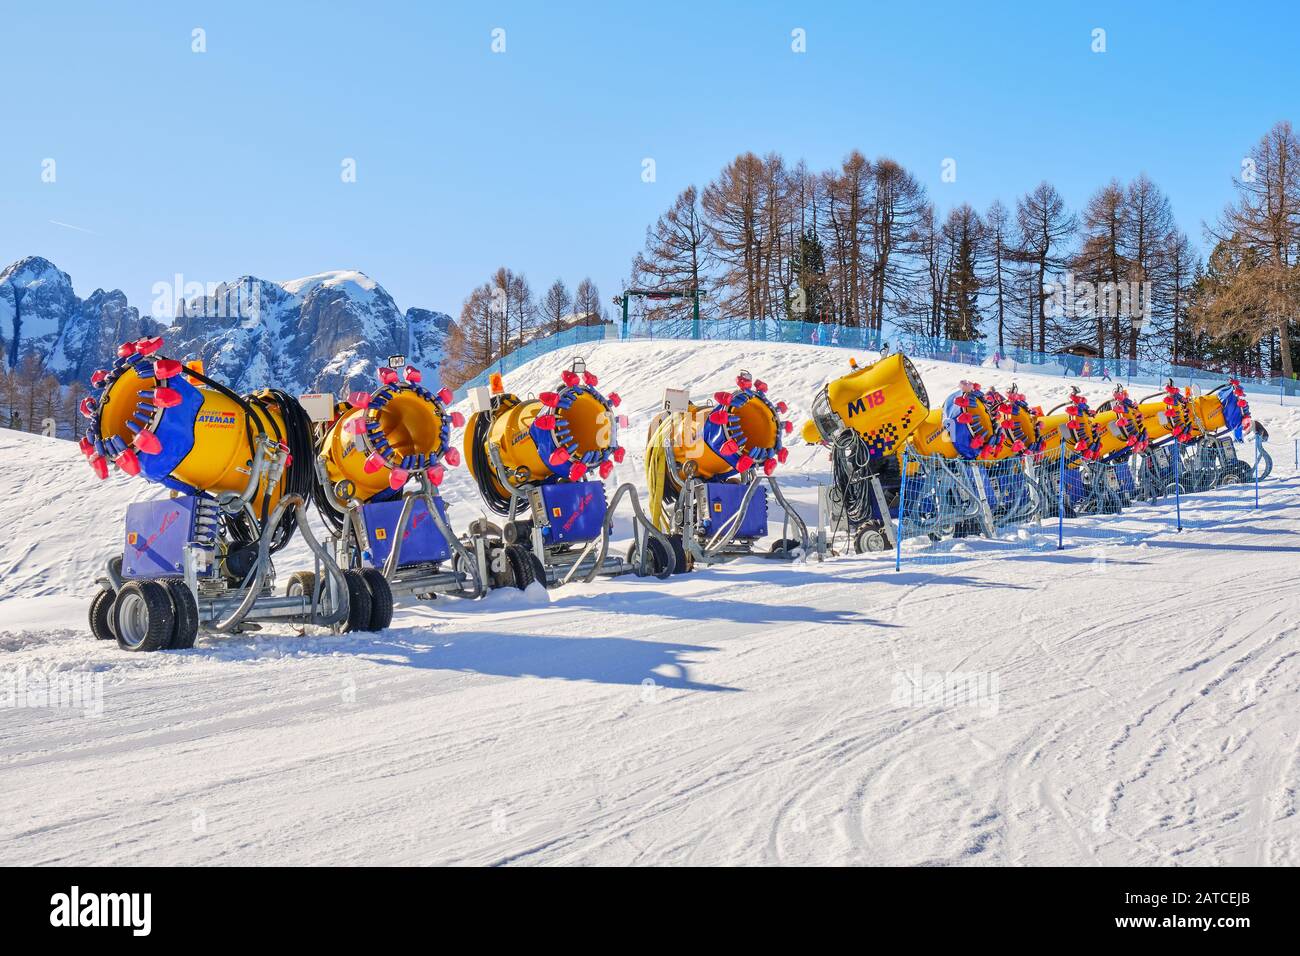 Dolomitas, Italia - 23 de enero de 2020: Fila de cañones de nieve (cañones) Marca Latemar, de TechnoAlpin, bordeada en una pista de esquí en el dominio Val di Fassa Foto de stock